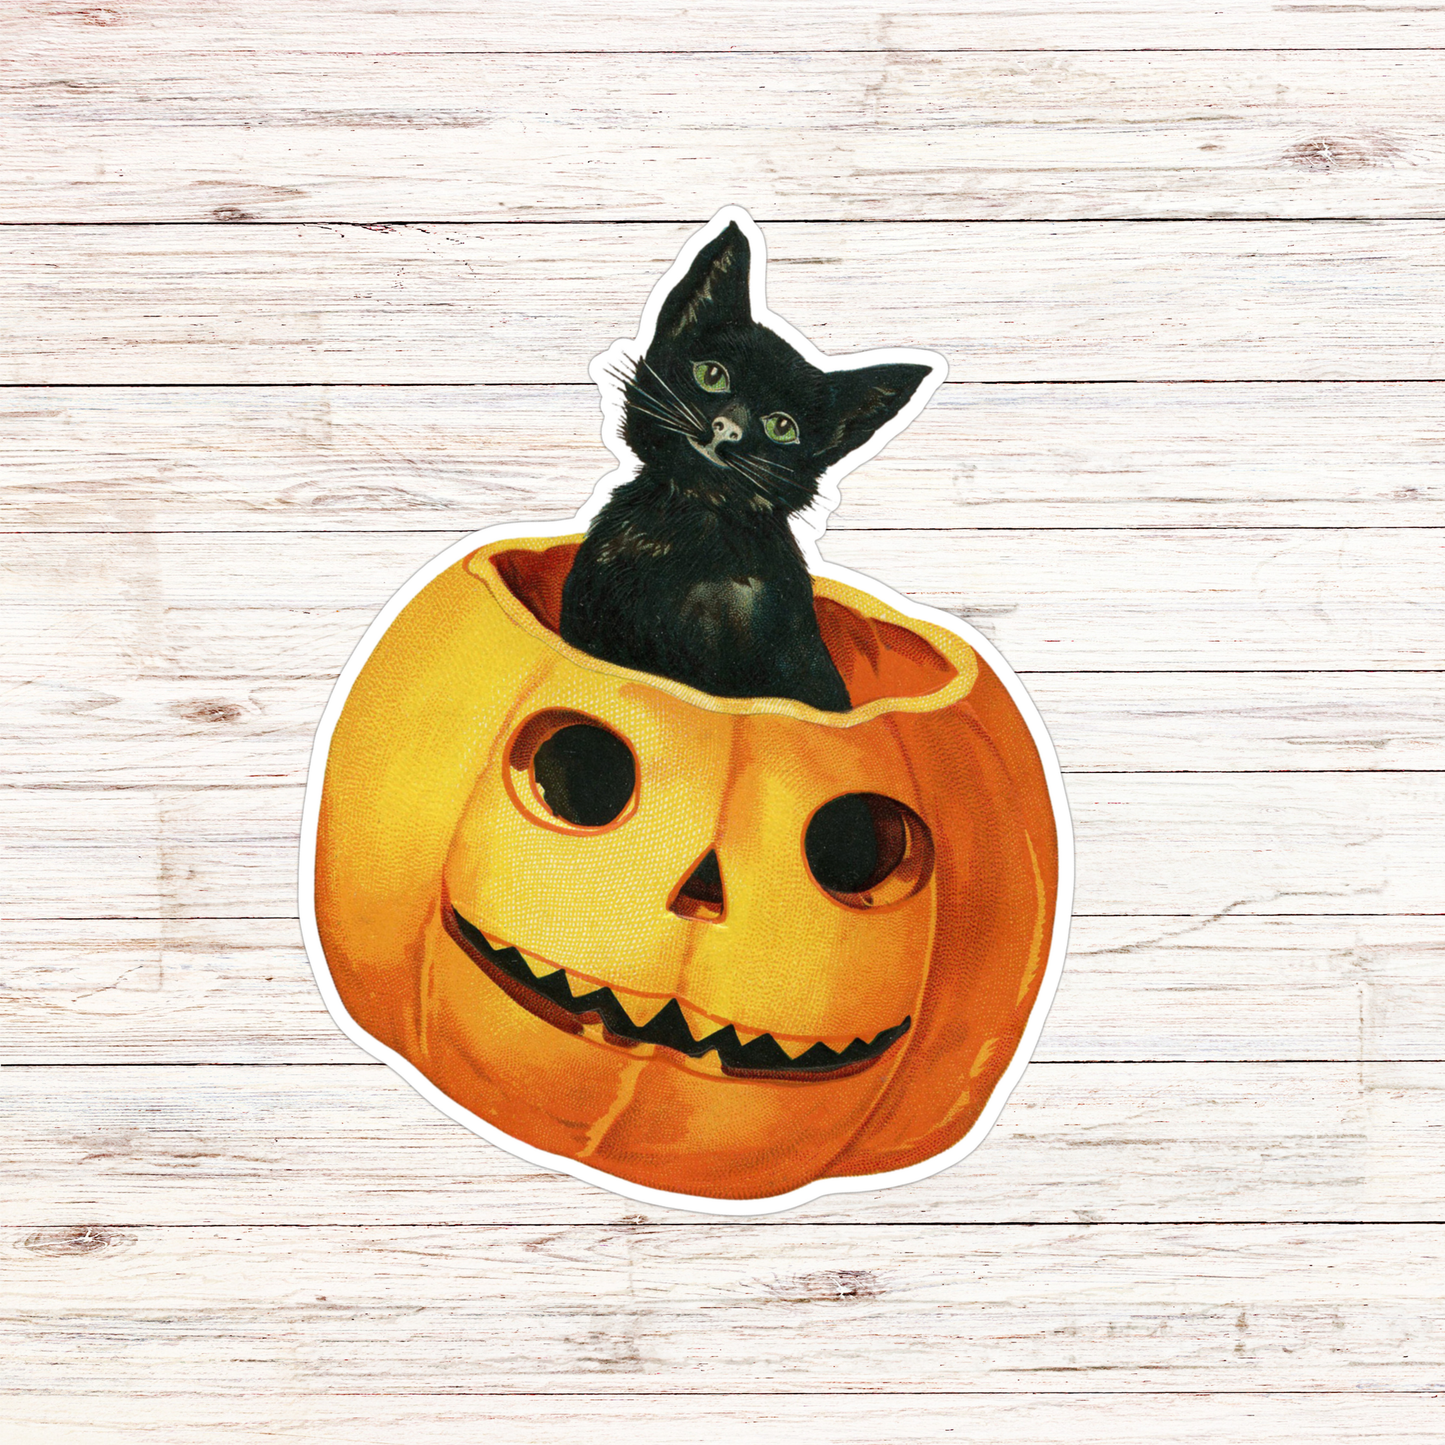 Sticker-Halloween-01: Black Cat Pumpkin